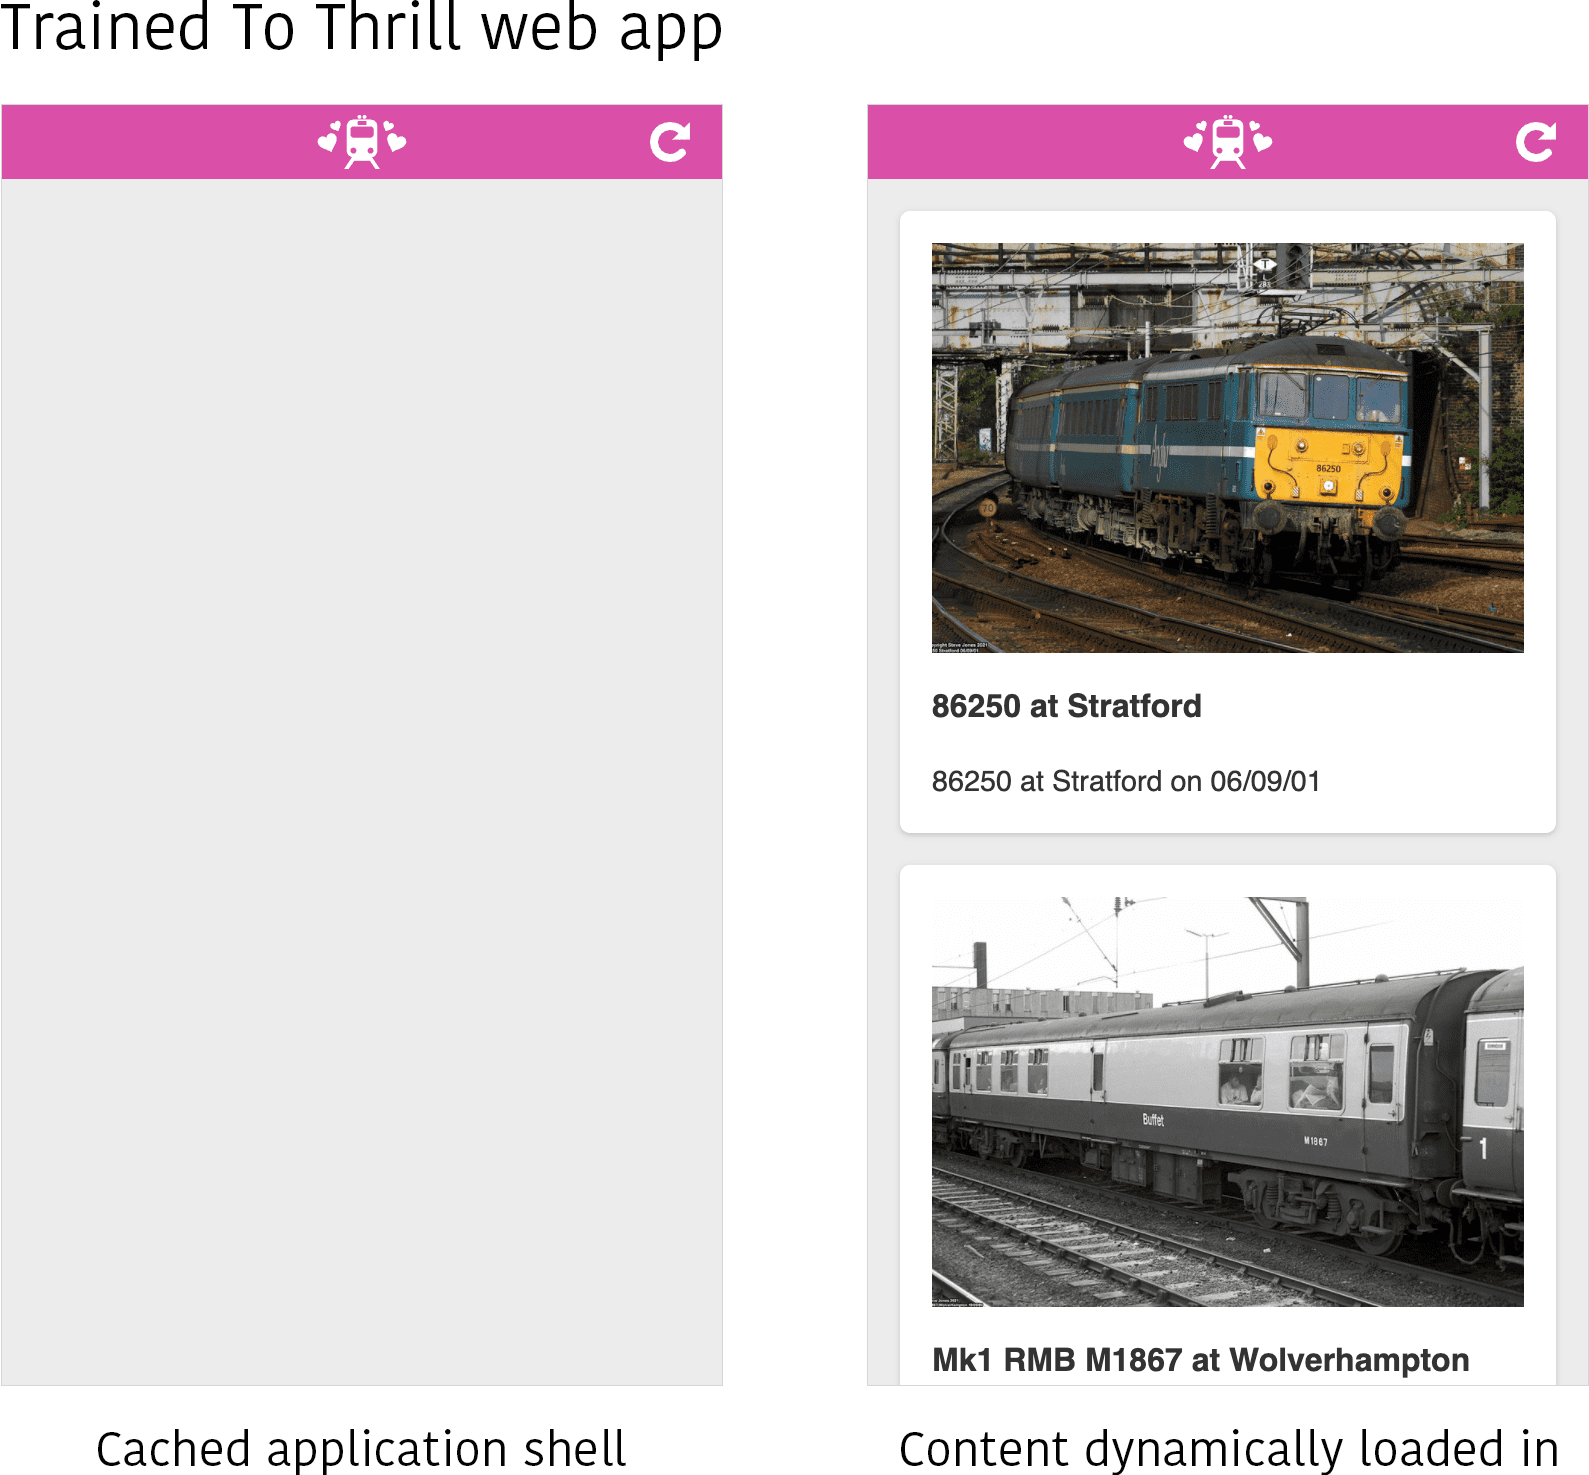 Een screenshot van de Trained to Thrill-webapp in twee verschillende statussen. Links is alleen de in de cache opgeslagen applicatieshell zichtbaar, zonder dat er inhoud is ingevuld. Aan de rechterkant wordt de inhoud (een paar afbeeldingen van enkele treinen) dynamisch geladen in het inhoudsgebied van de applicatieshell.